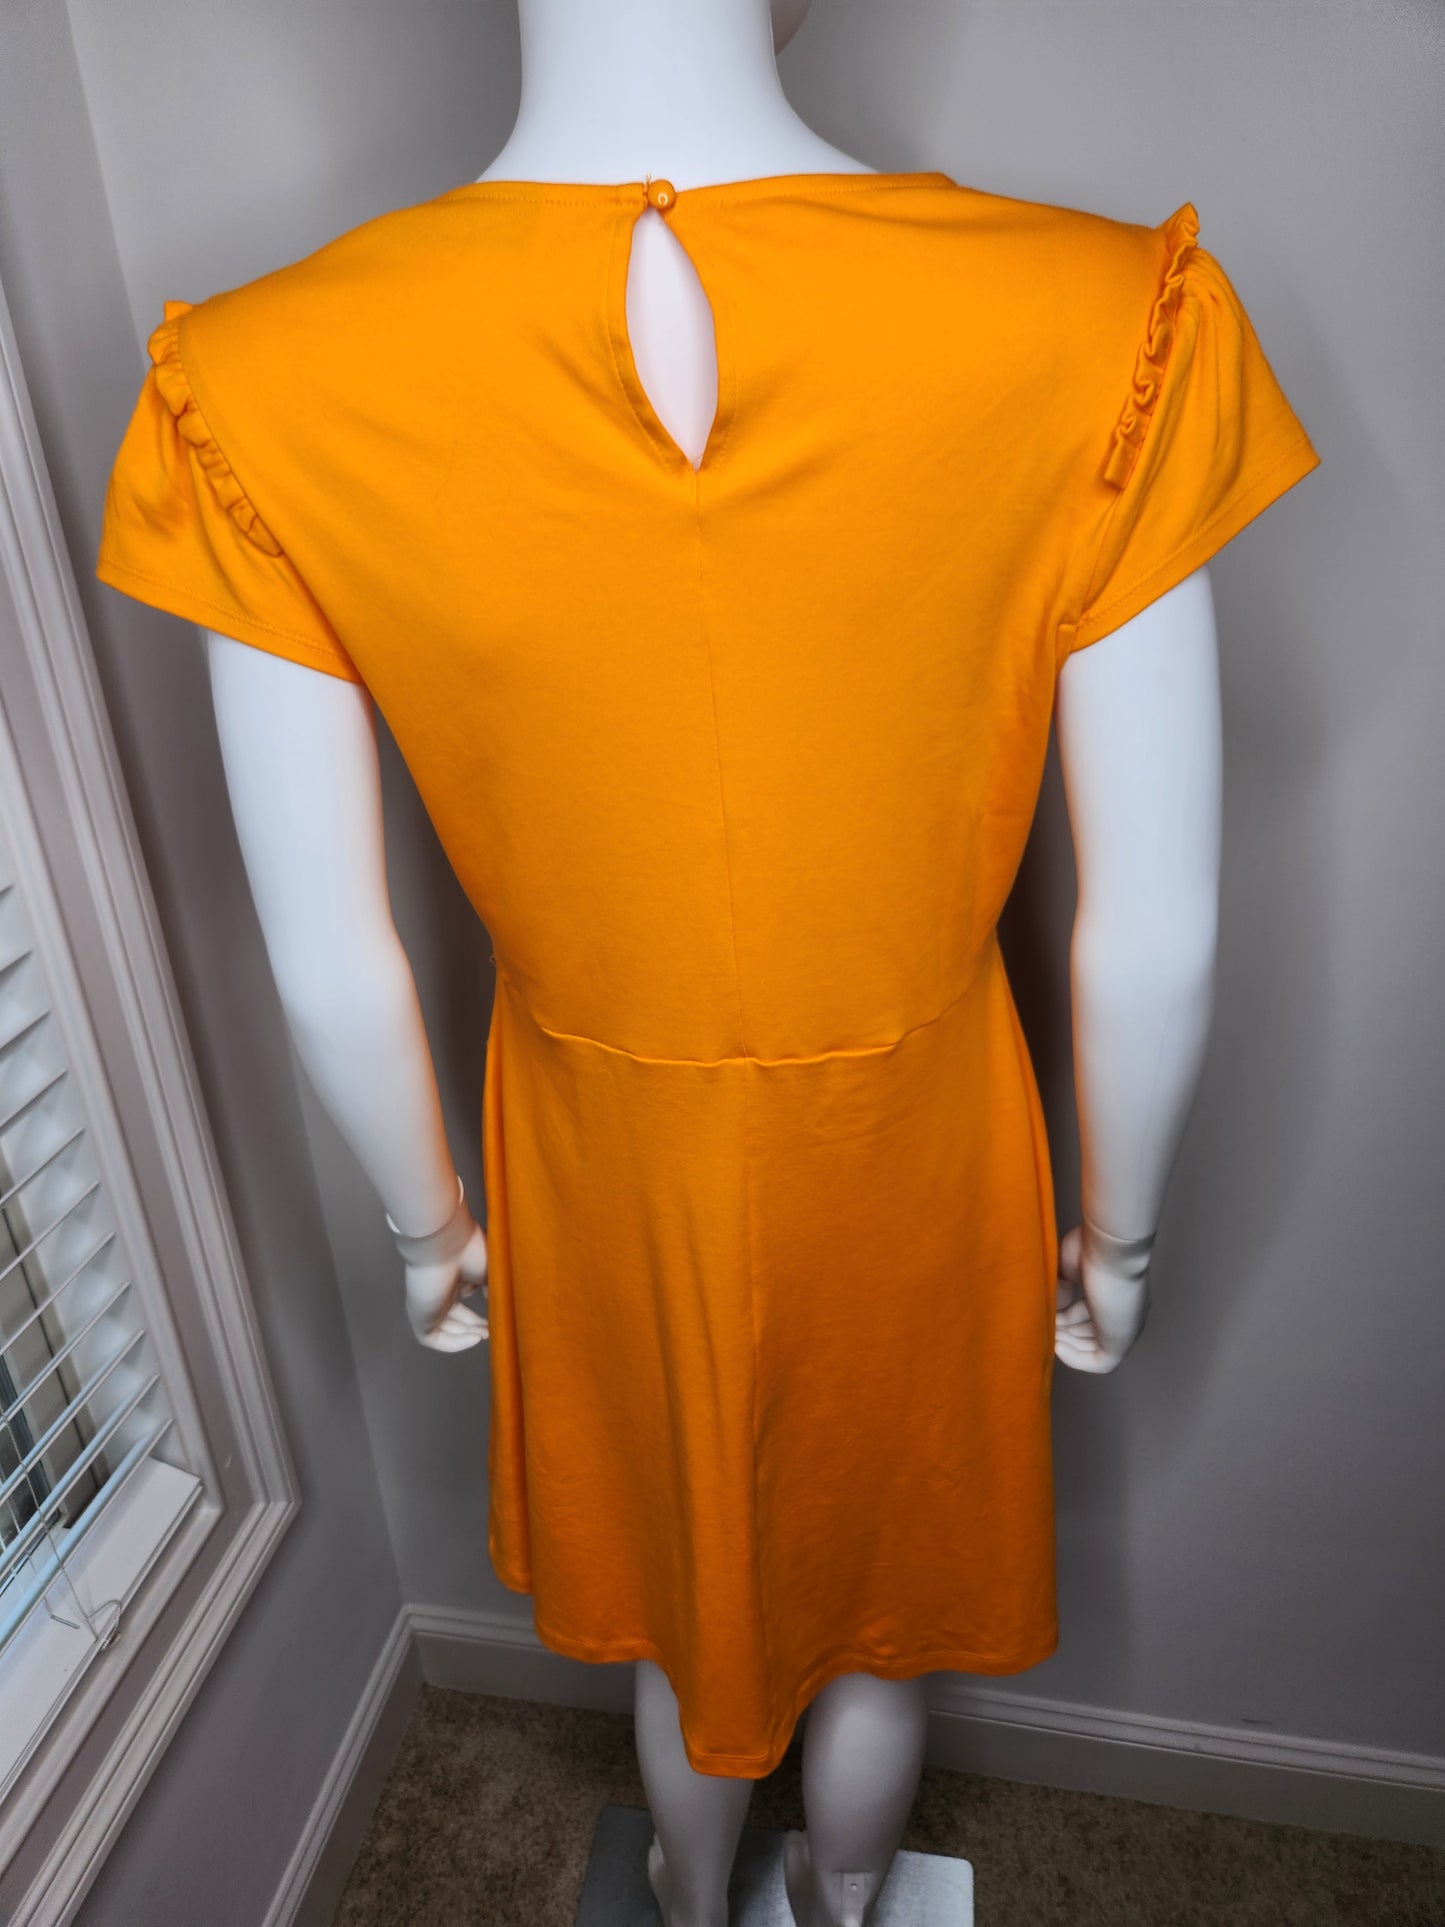 NY & Company Orange Dress Sz M